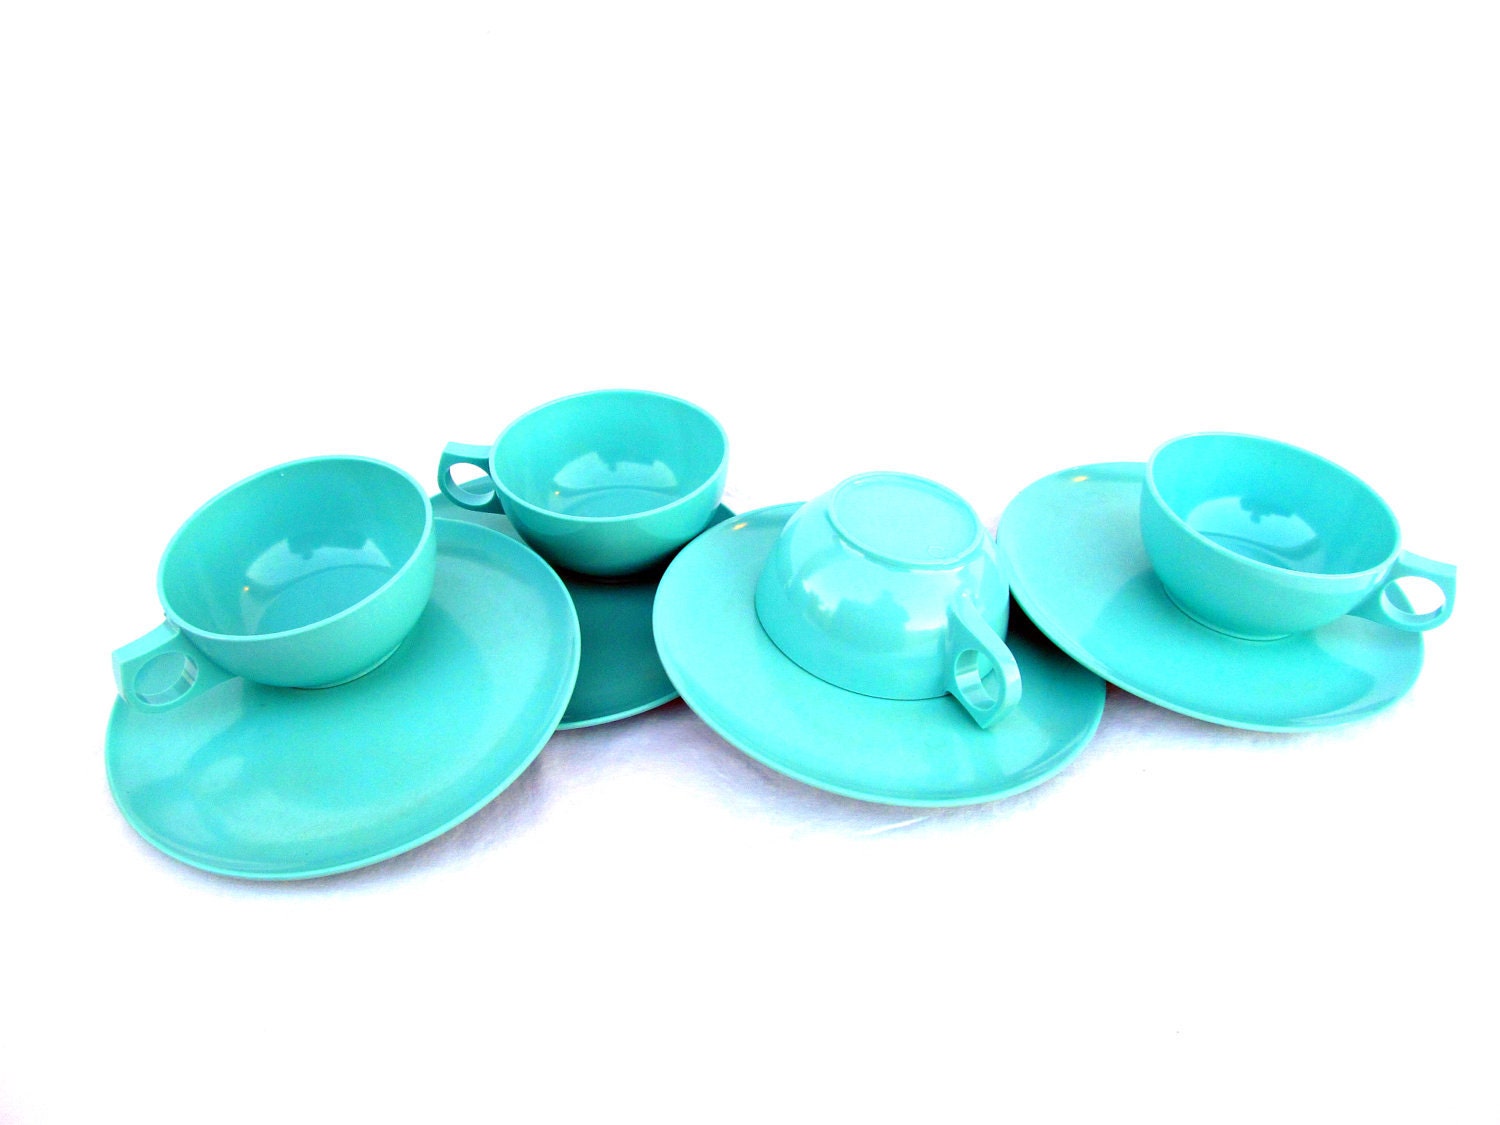 Vibrant Aqua Melamine Cups & Plates